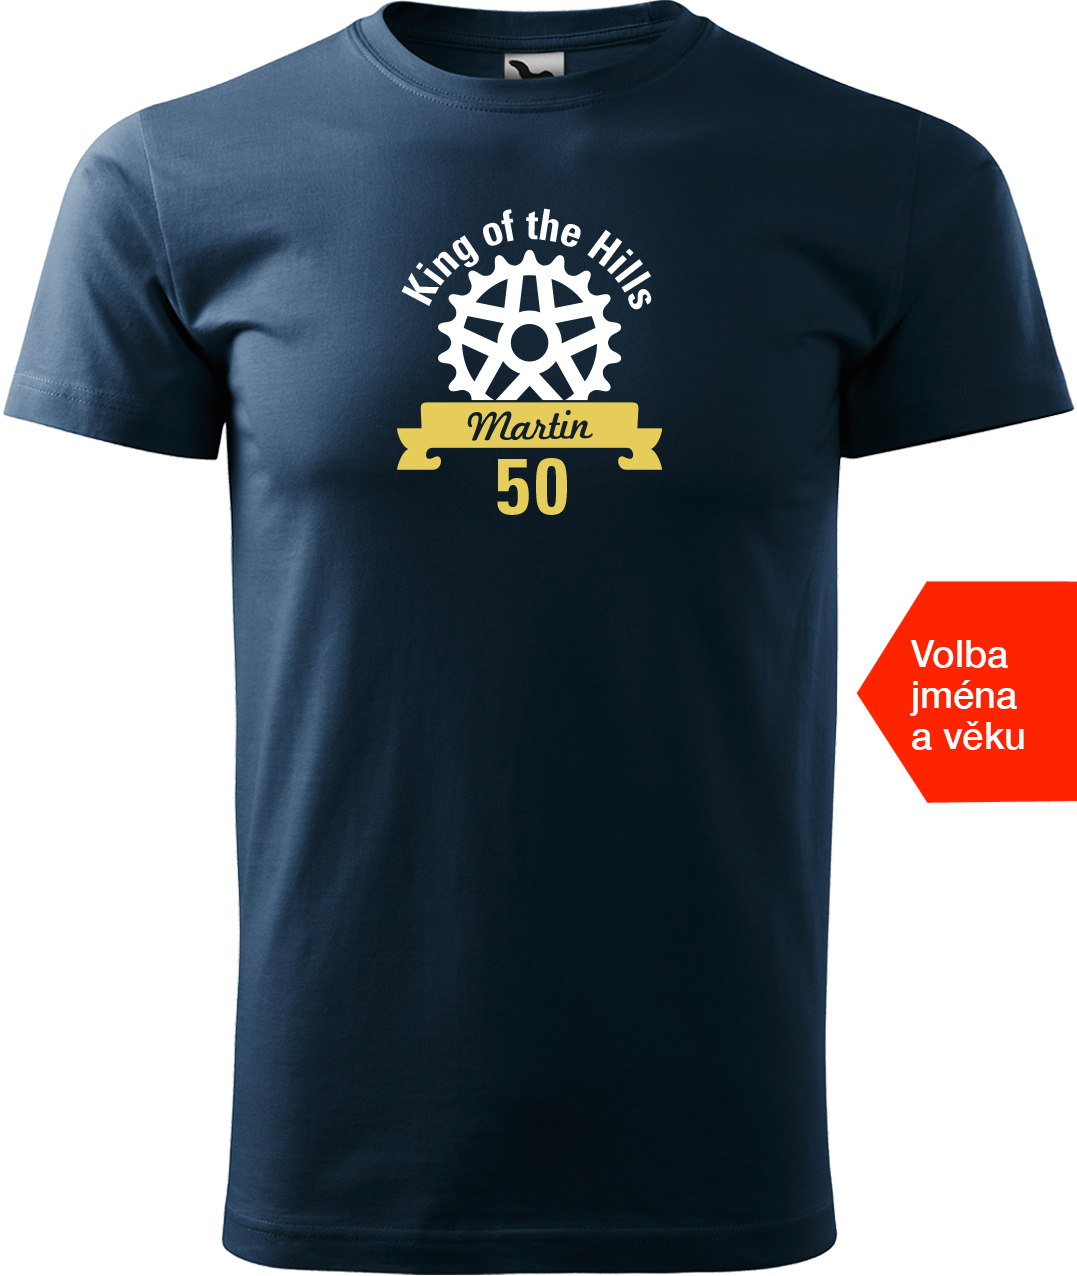 Pánské tričko pro cyklistu se jménem - King of the Hills Velikost: S, Barva: Námořní modrá (02)